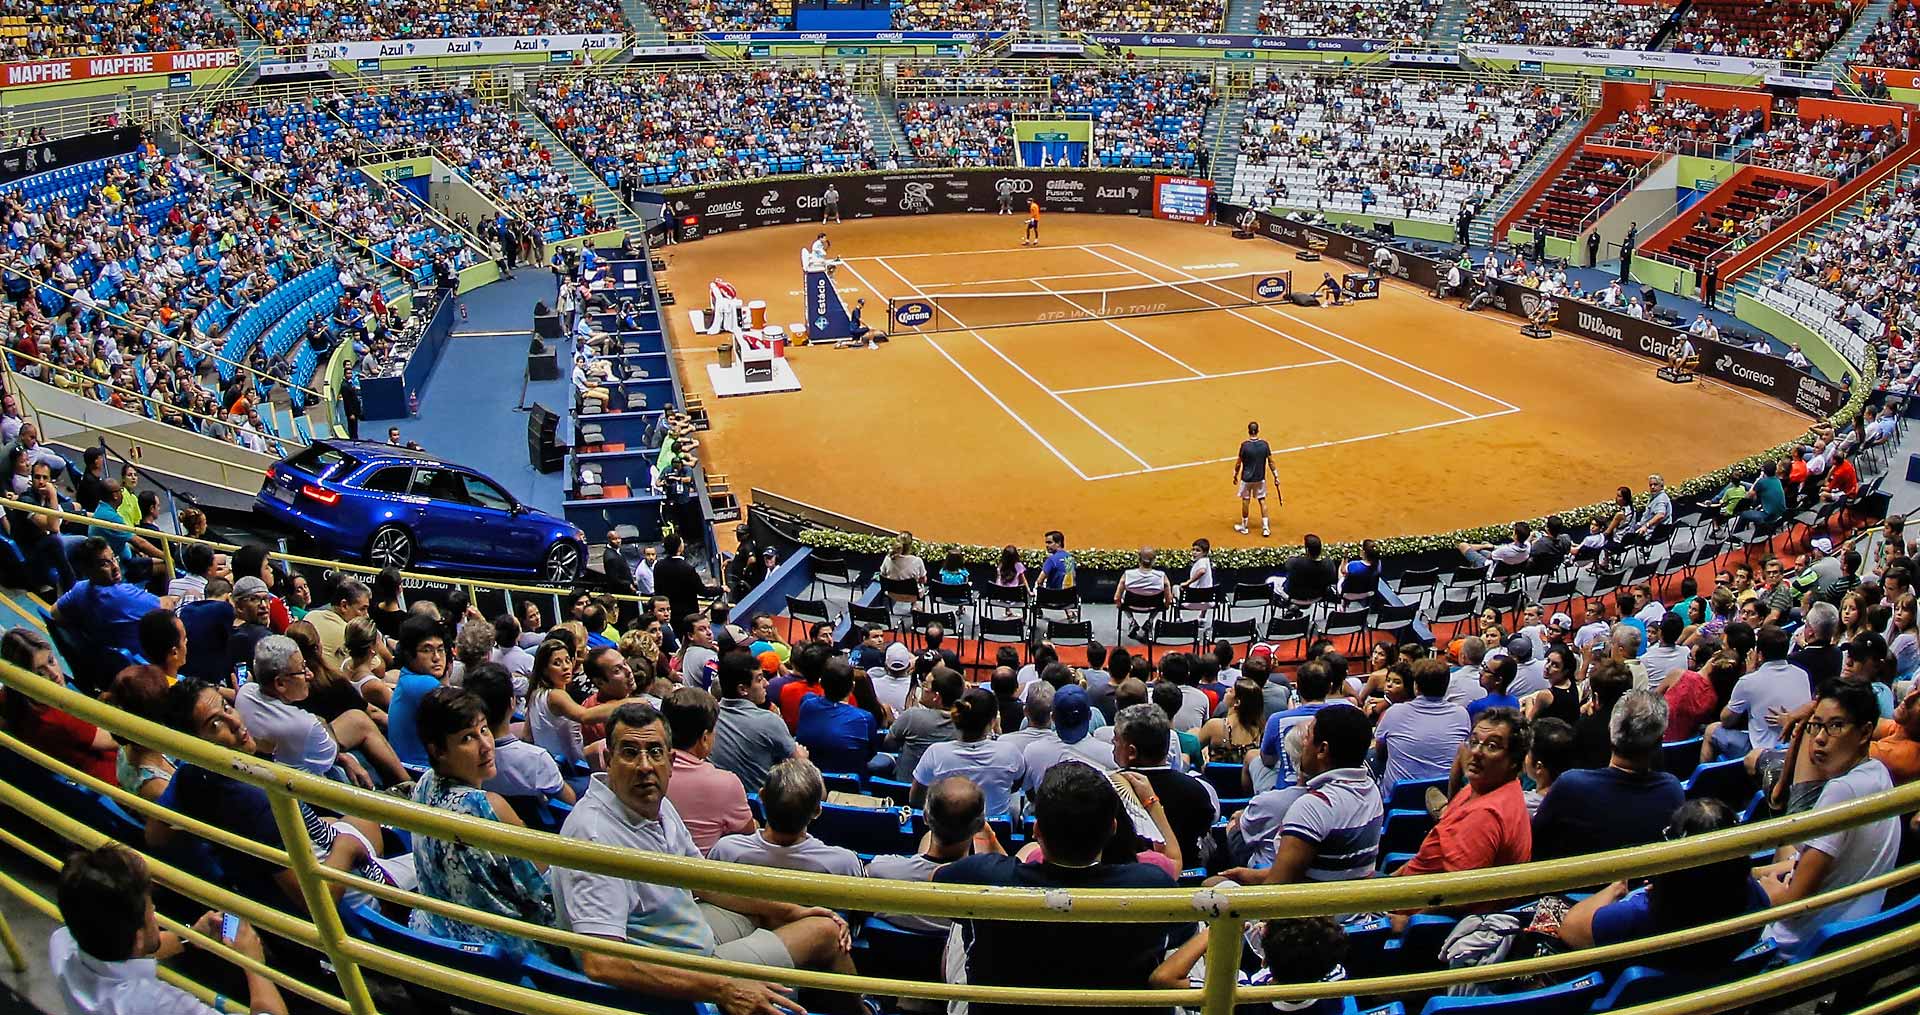 Sao Paulo Challenger De Tenis